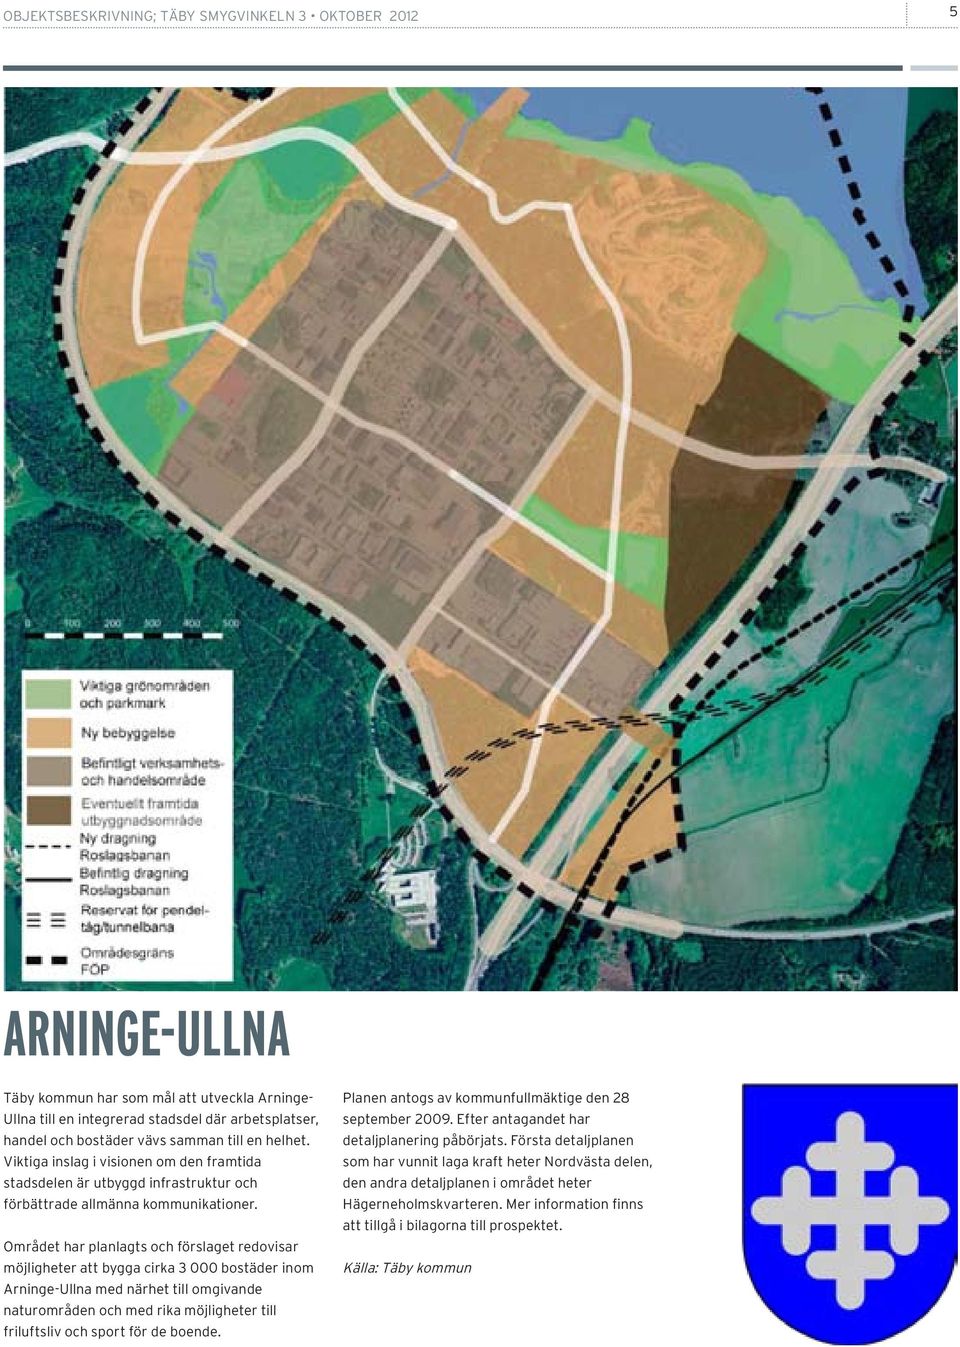 Området har planlagts och förslaget redovisar möjligheter att bygga cirka 3 000 bostäder inom Arninge-Ullna med närhet till omgivande naturområden och med rika möjligheter till friluftsliv och sport